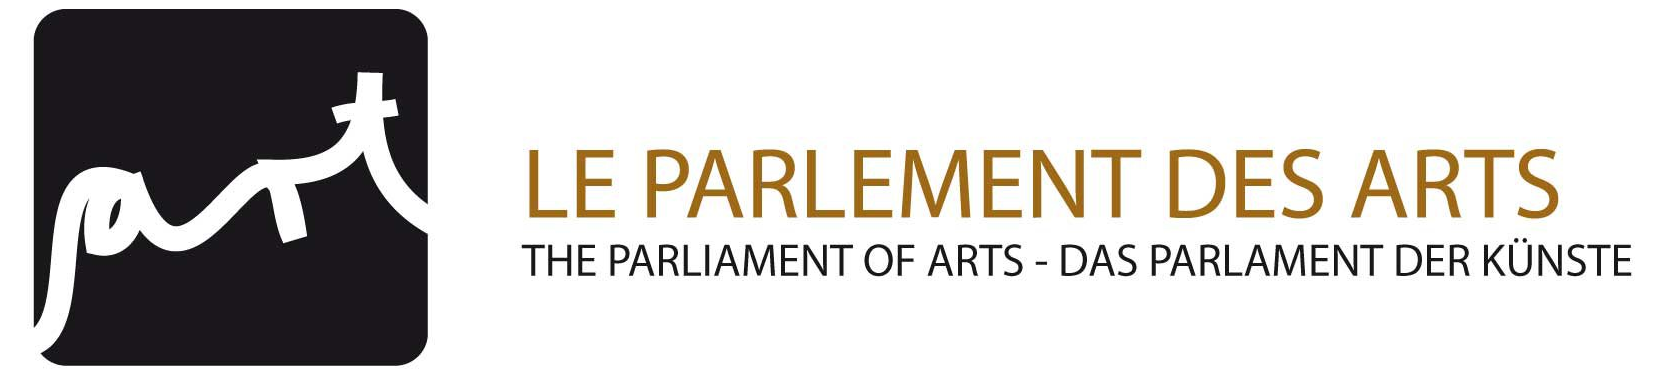 Parlements des arts Logo